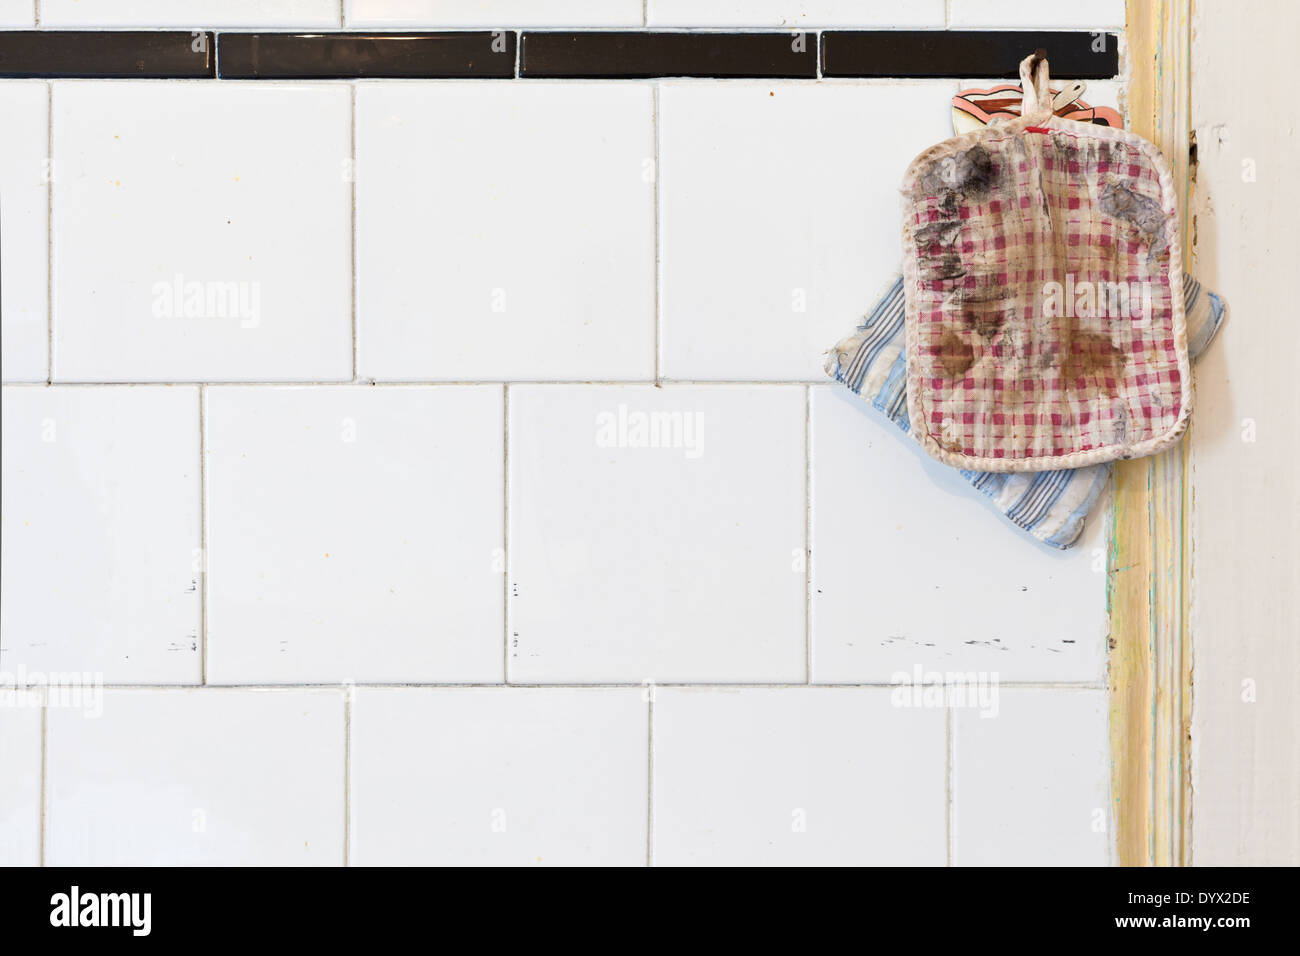 Zwei alte Topflappen auf einem schmutzigen weißer geflieste Küchenwand. Viele Textfreiraum Stockfoto